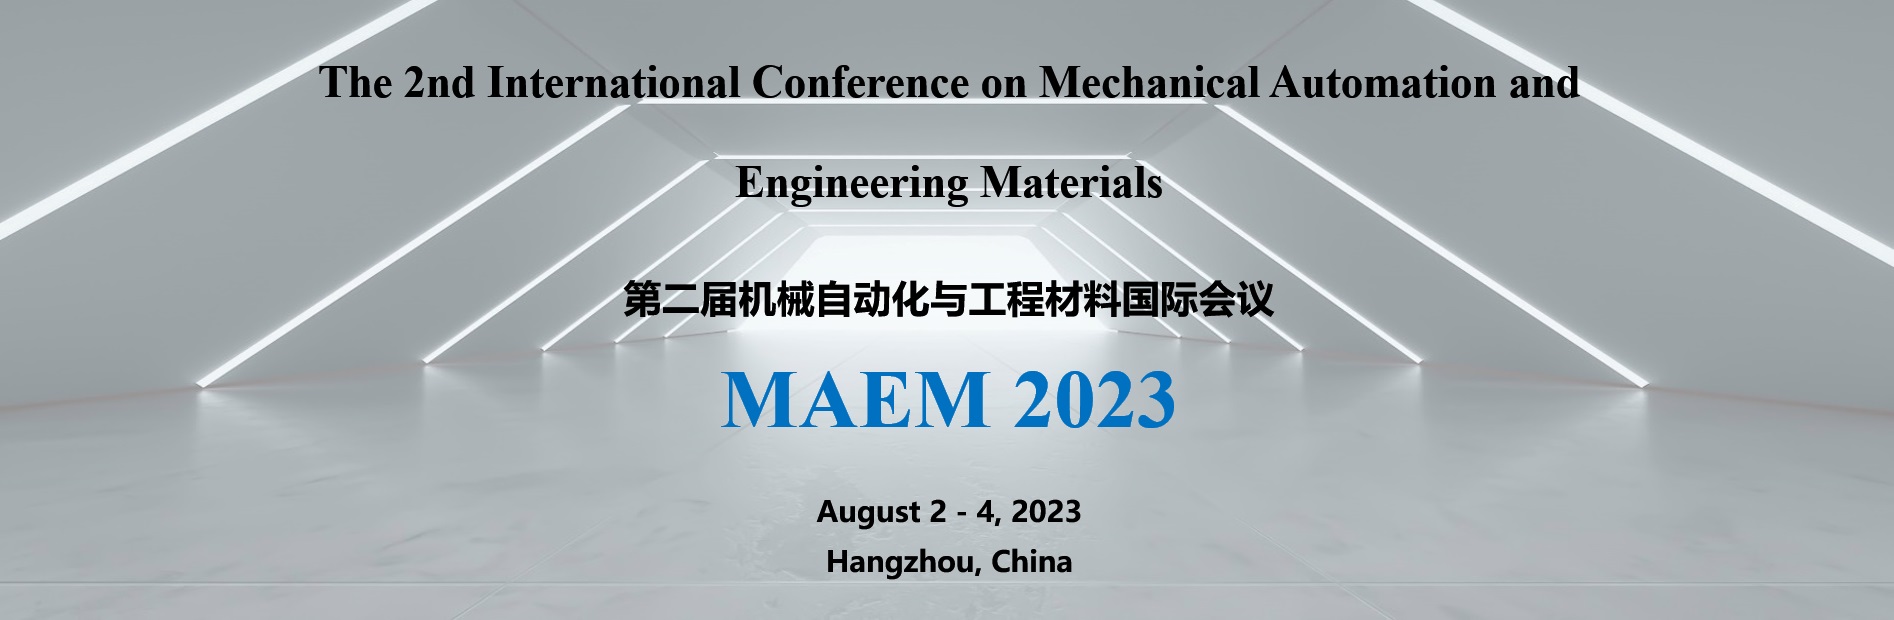 机械自动化与工程材料国际会议